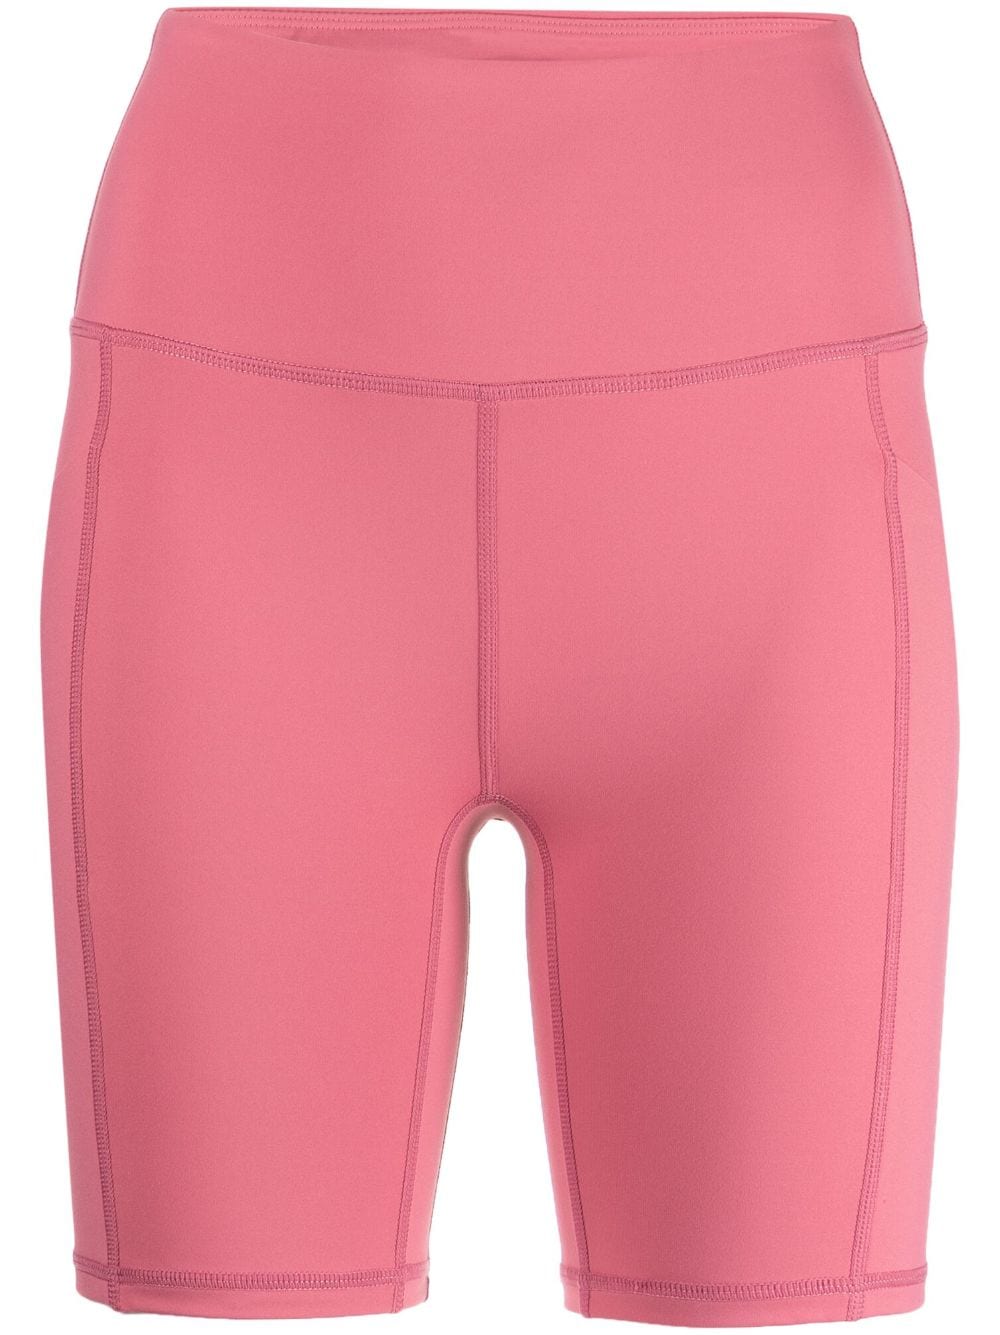 Varley Let's Go Pocket cheetah-print shorts - Pink